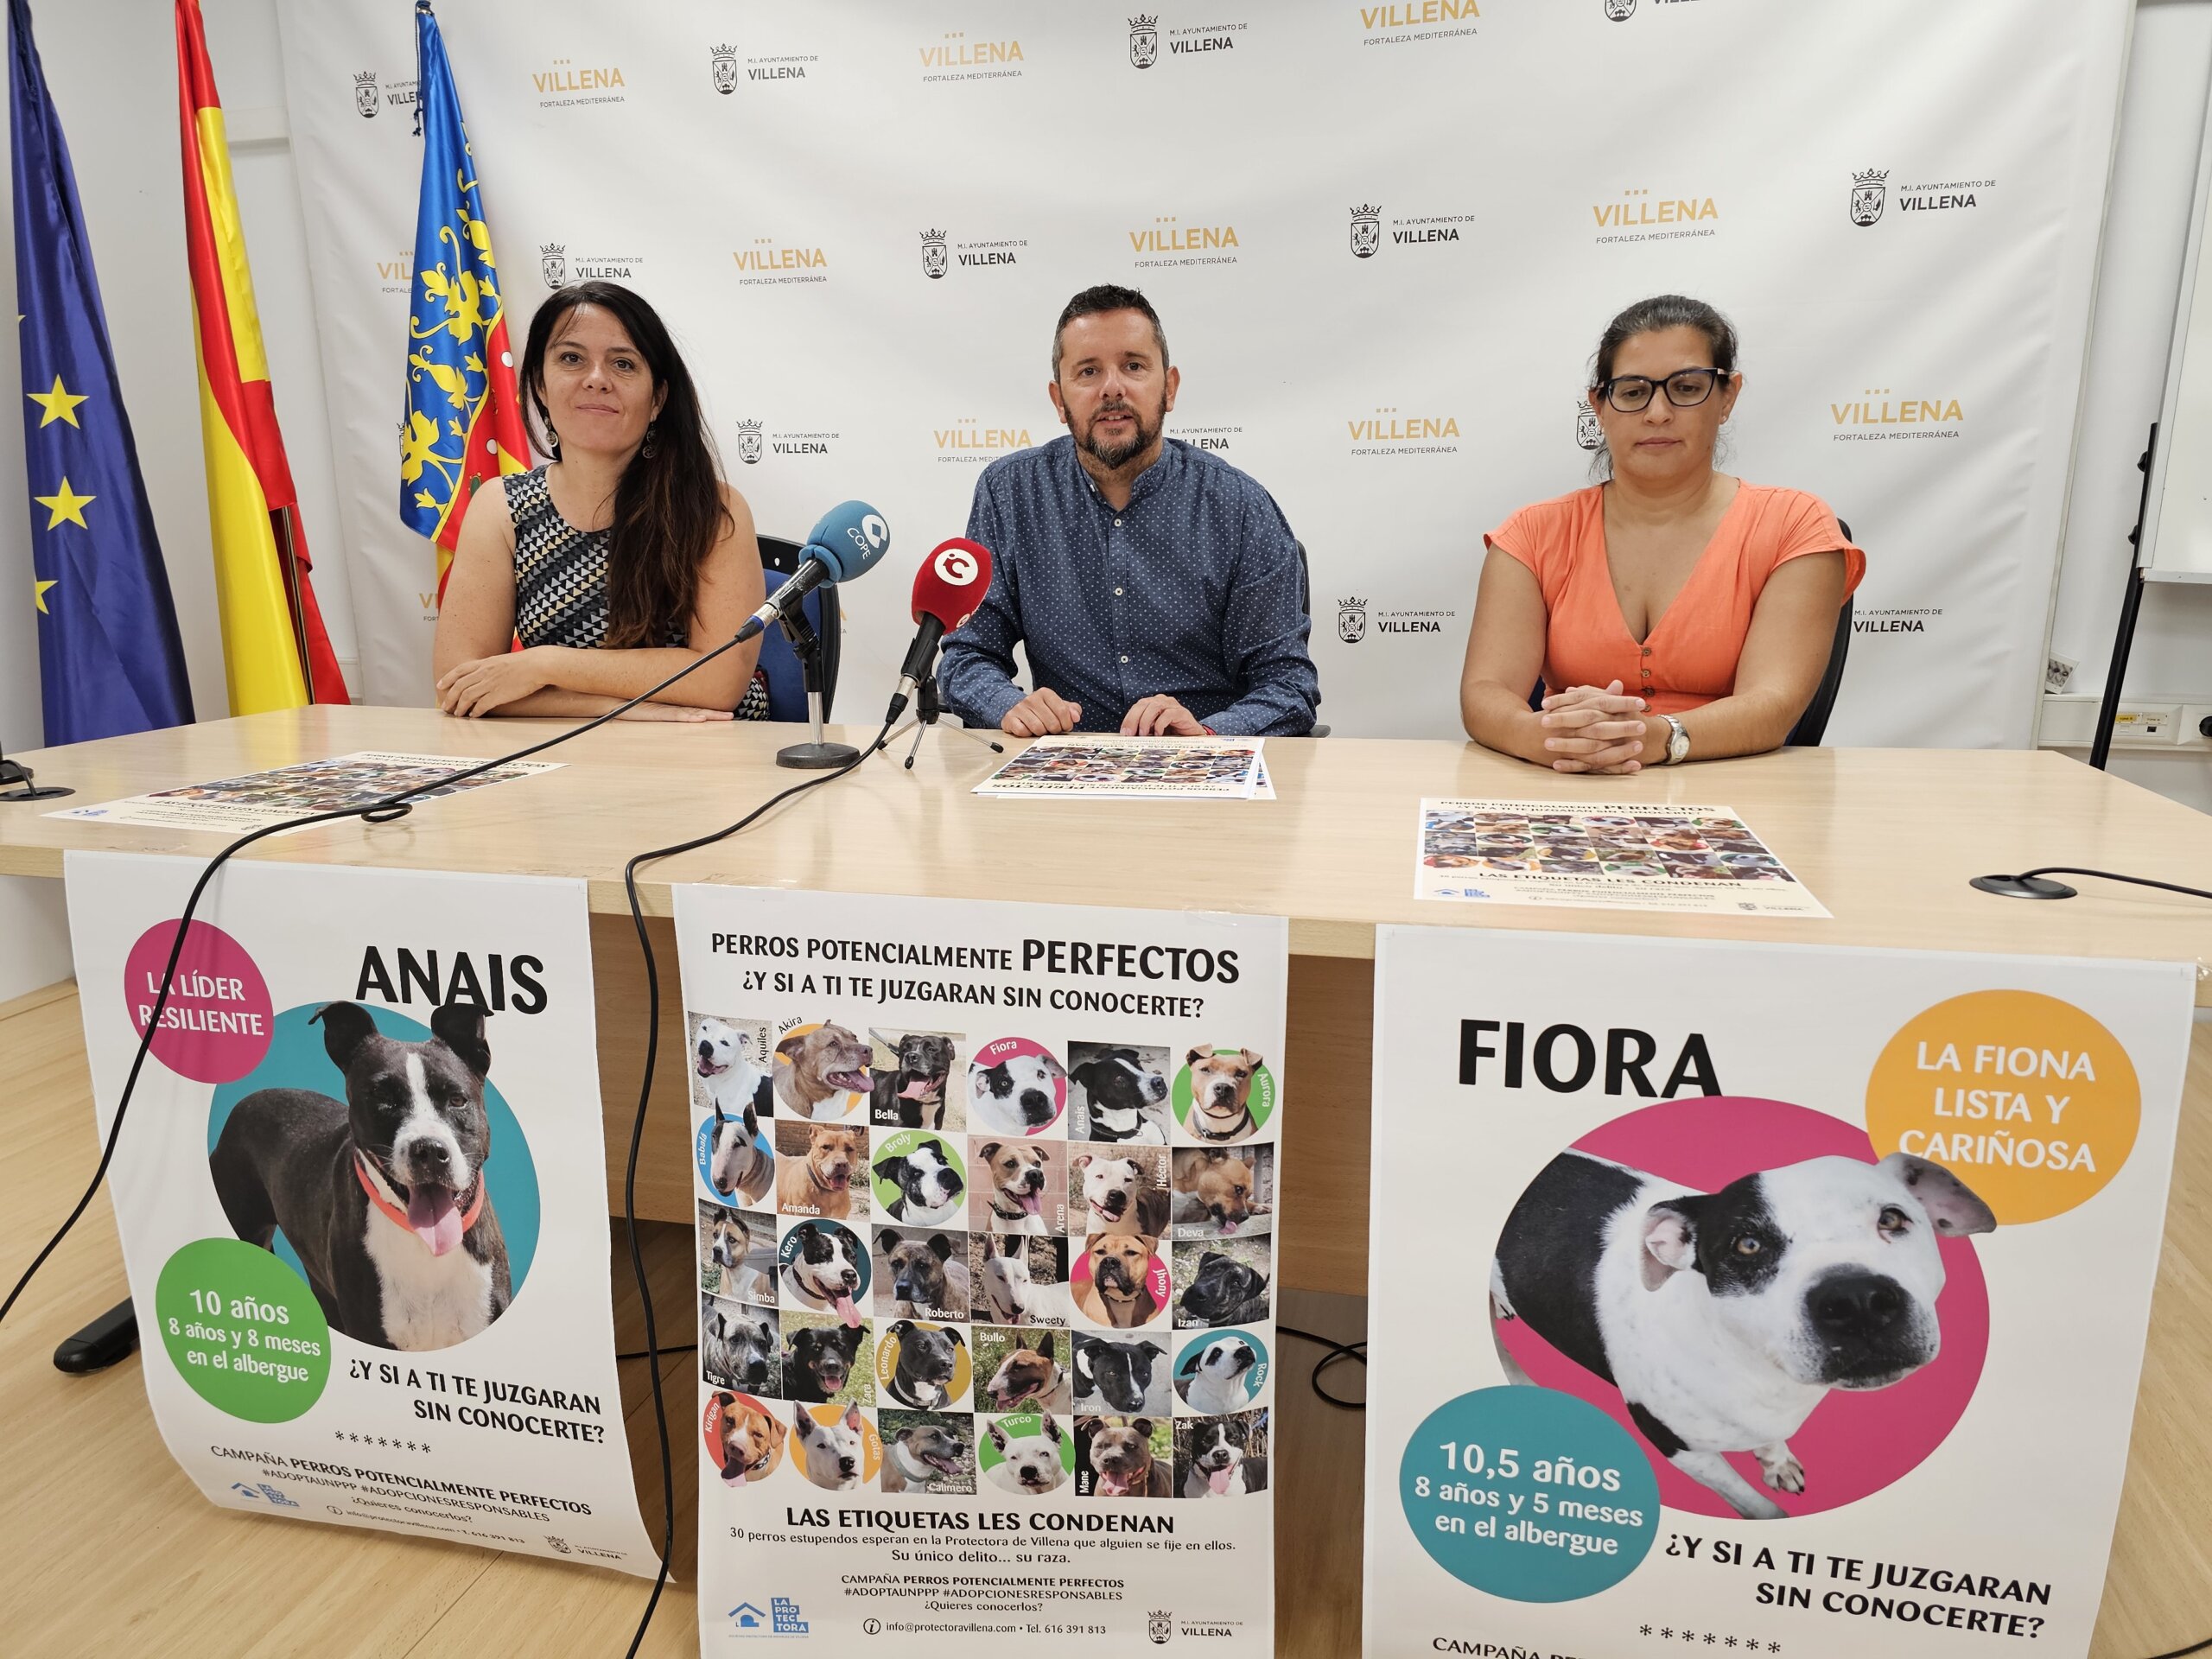 La Protectora de Villena inicia una campaña para que se adopten o apadrinen perros potencialmente peligrosos